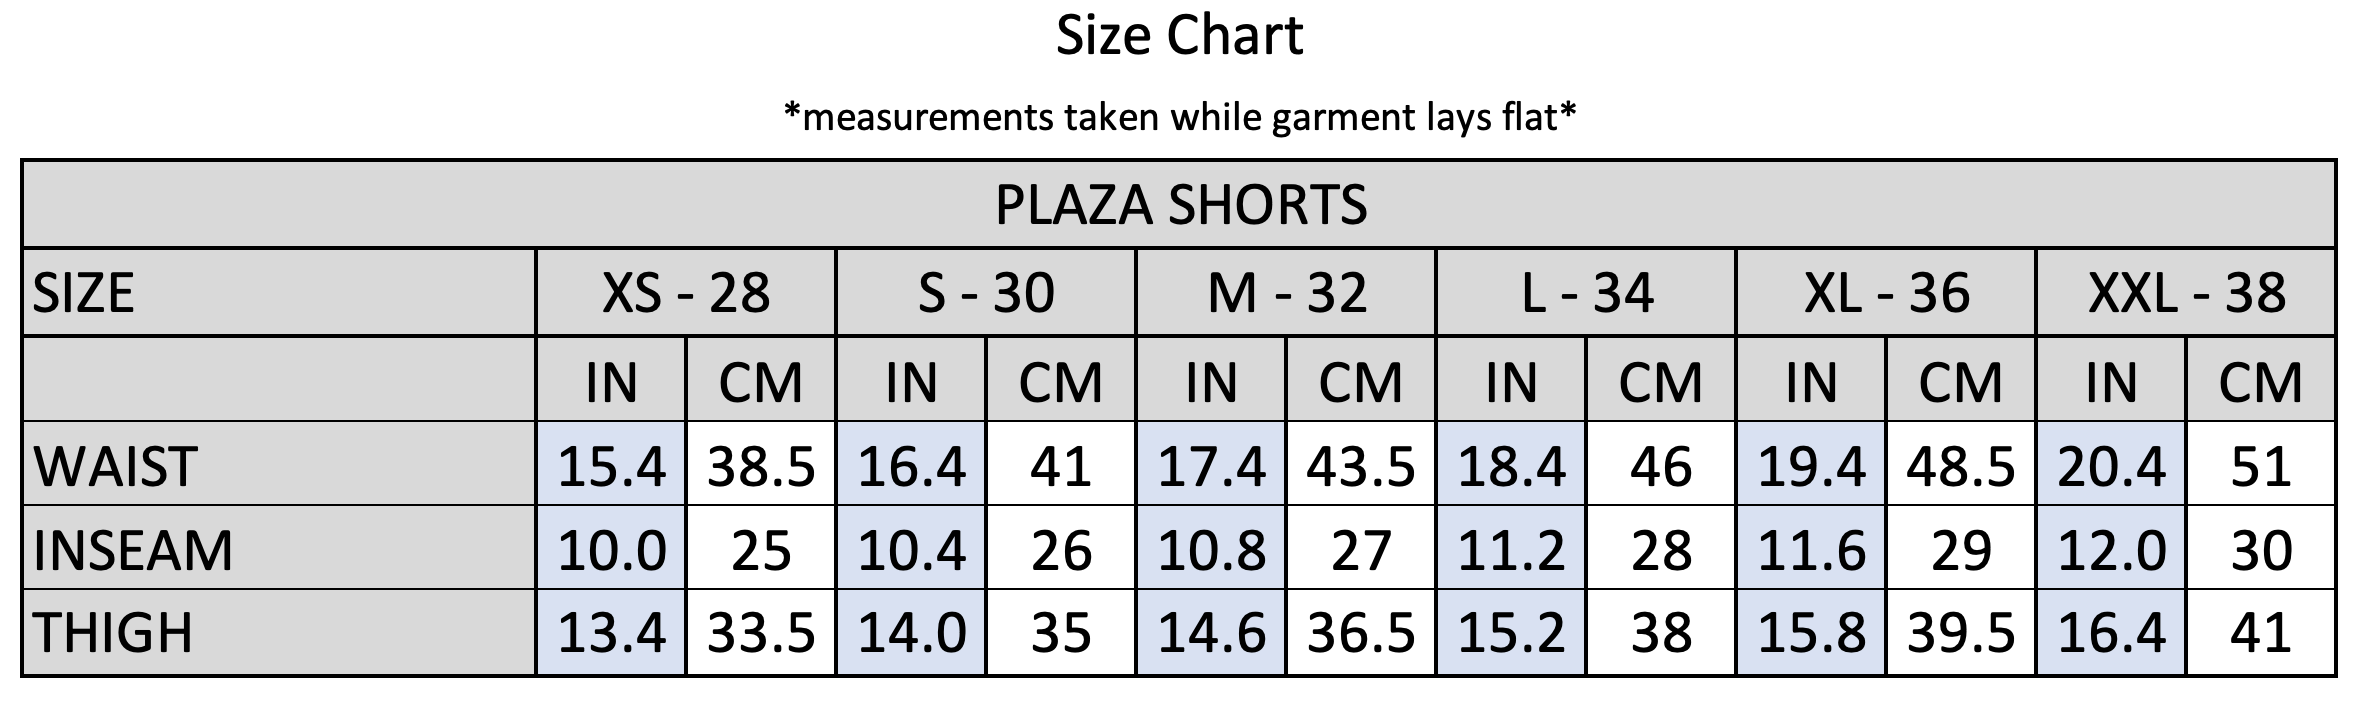 Plaza Shorts Size Chart